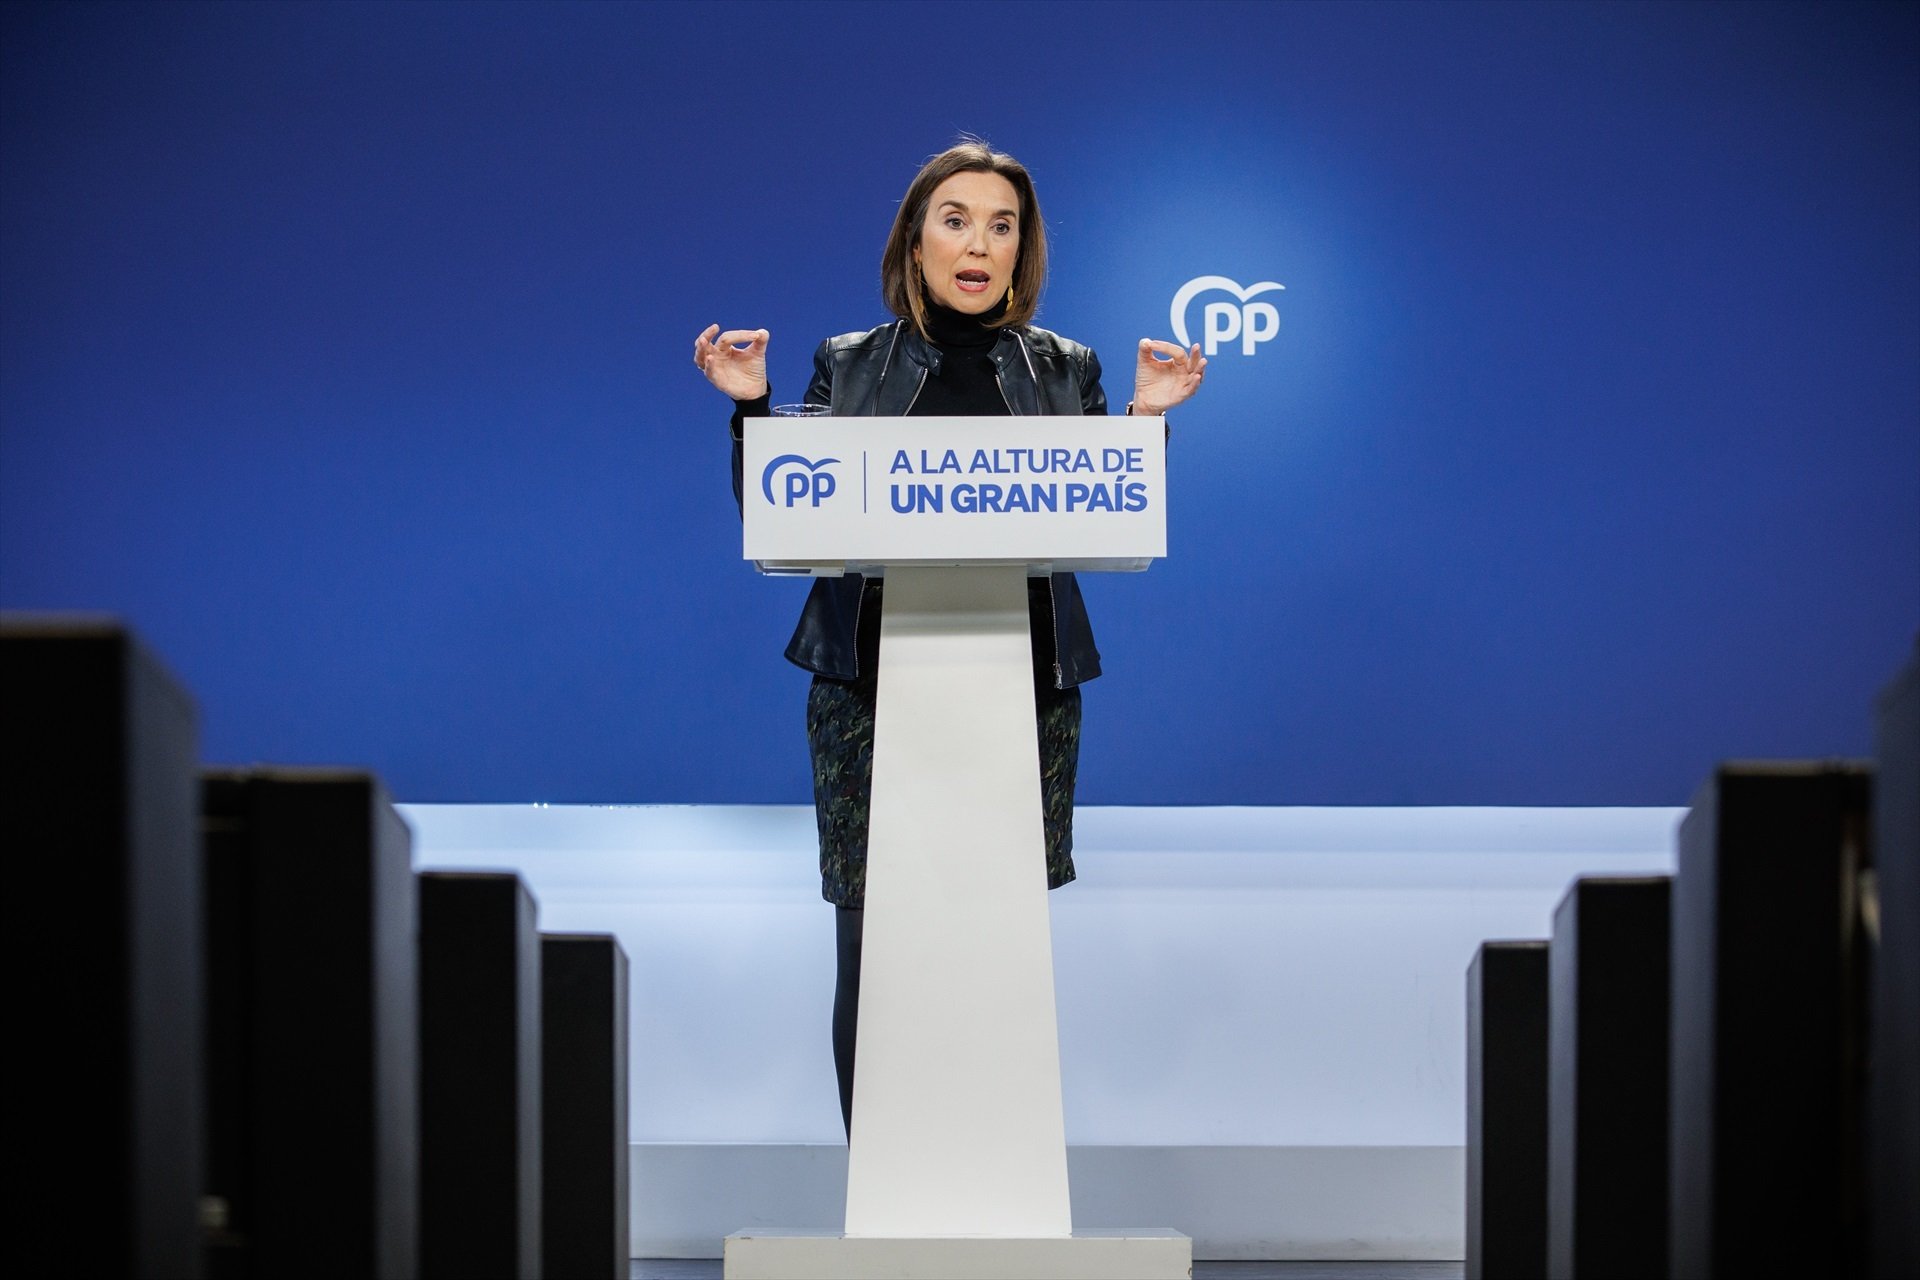 El PP critica el pla anticrisi del govern espanyol: "Arriba tard i es queda curt"